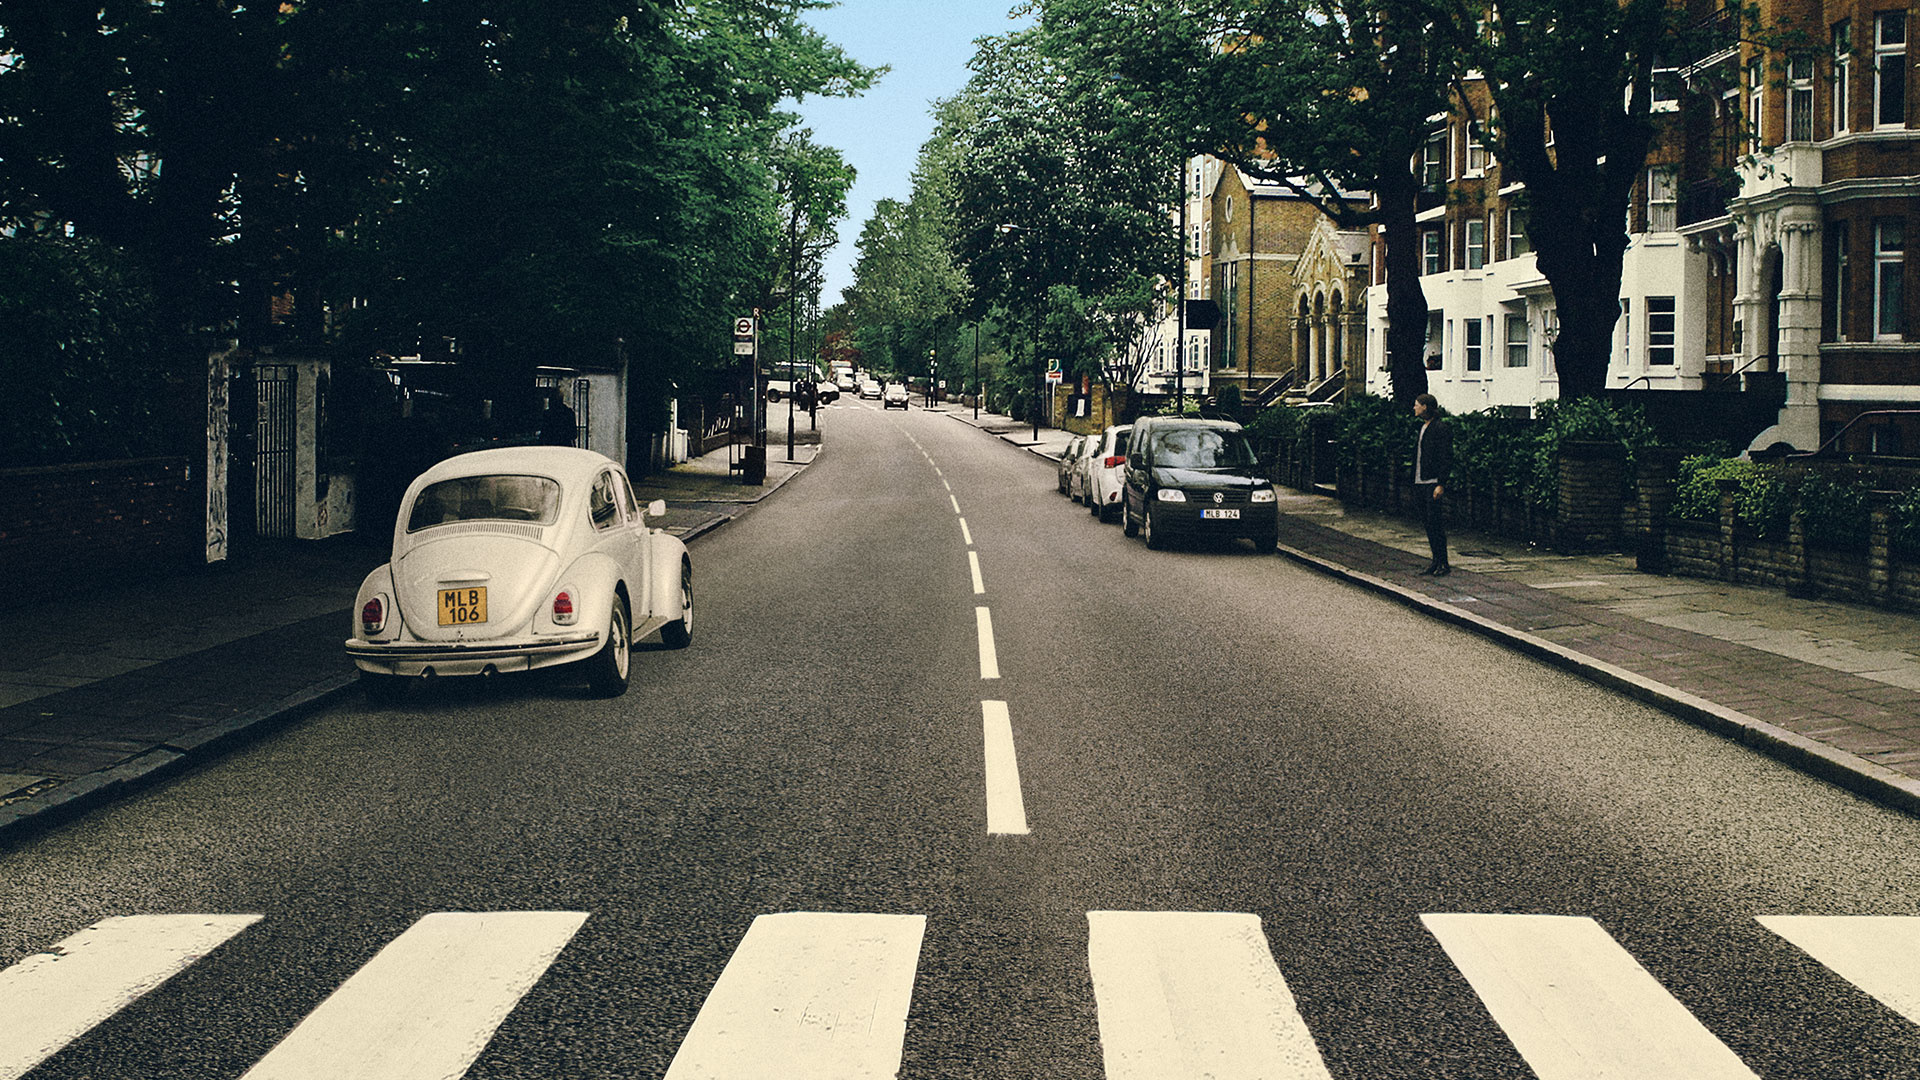 Abbey Road, Iconic crosswalk, Beatles tribute, London landmark, 1920x1080 Full HD Desktop